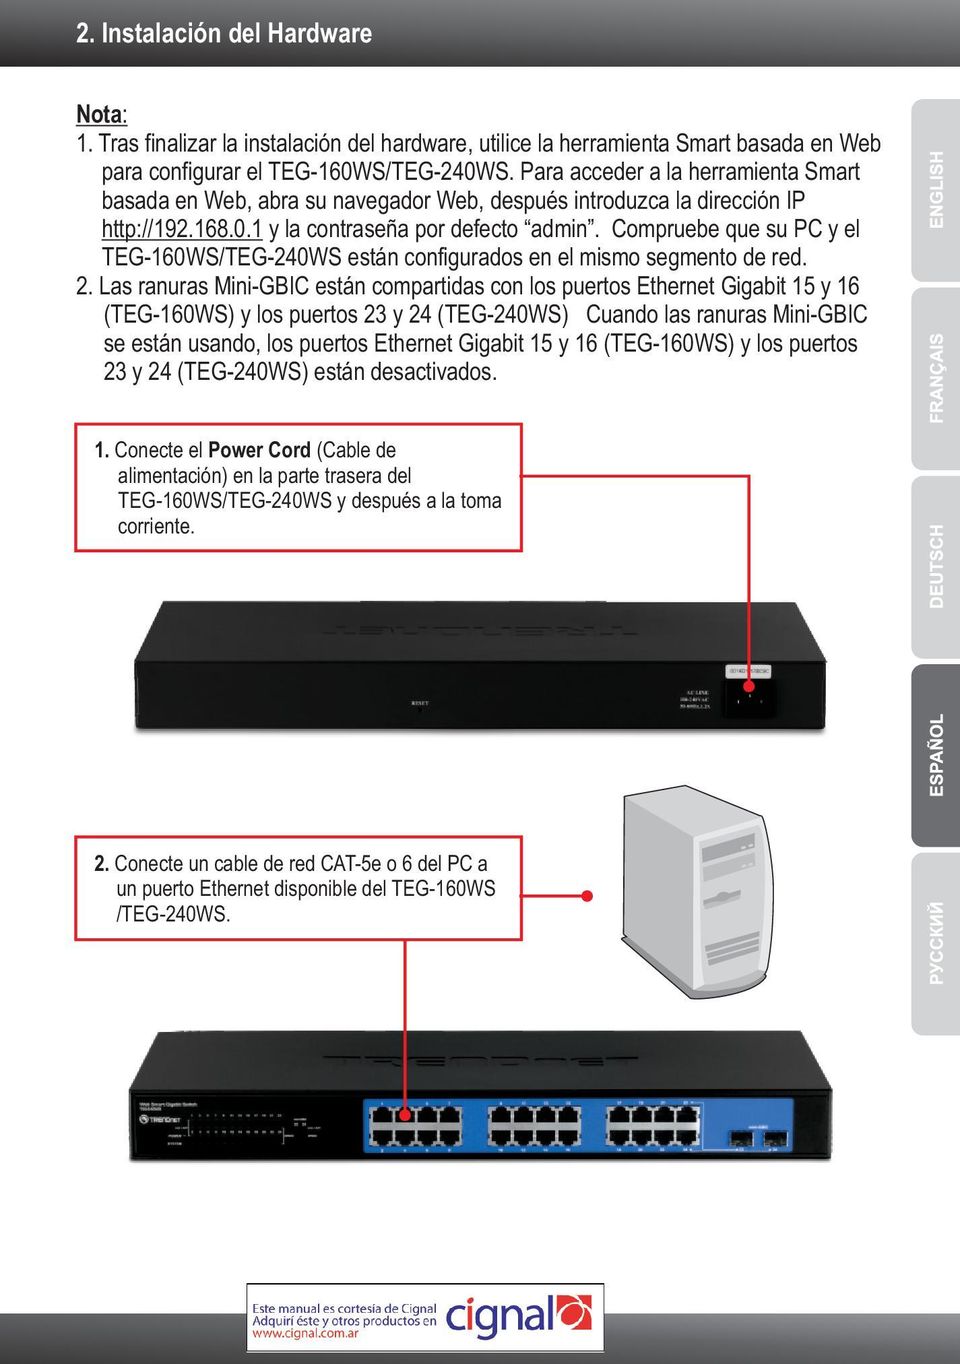 Compruebe que su PC y el TEG-160WS/TEG-240WS están configurados en el mismo segmento de red. 2.